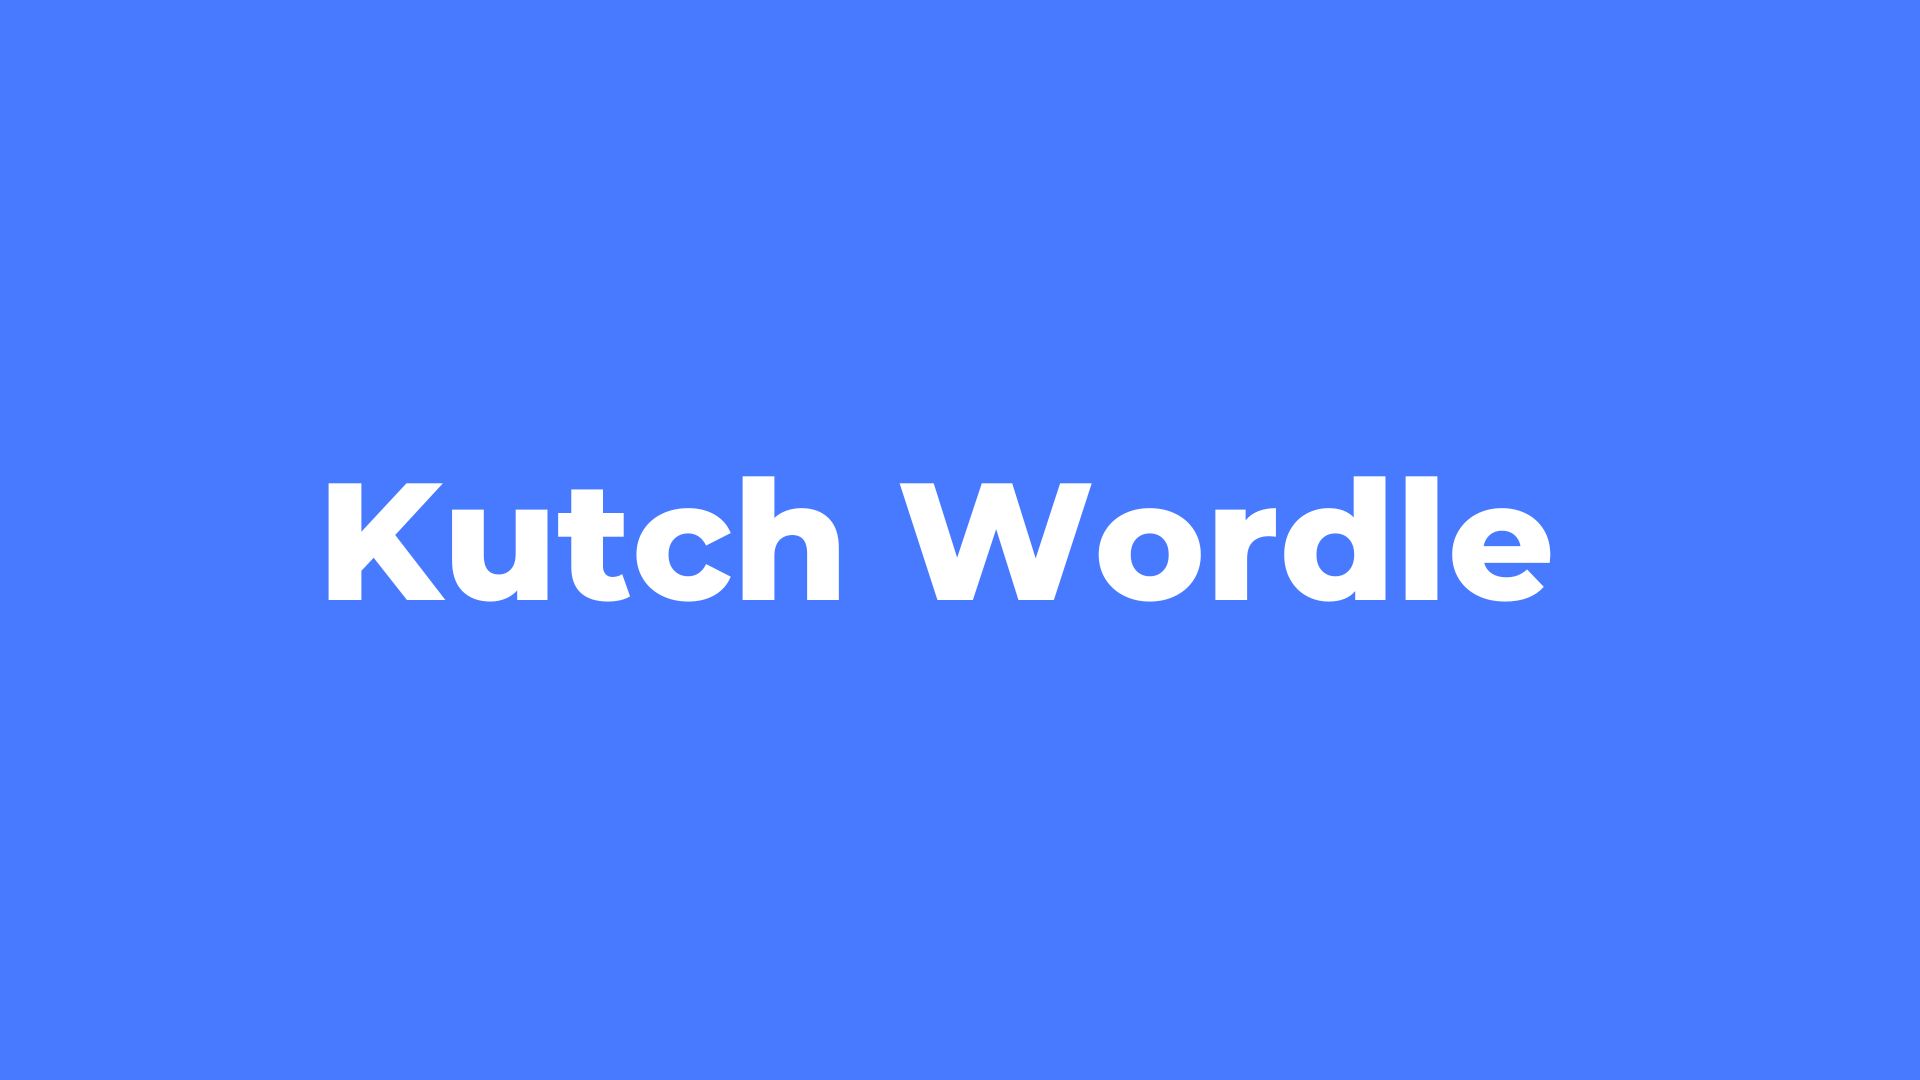 Kutch Wordle